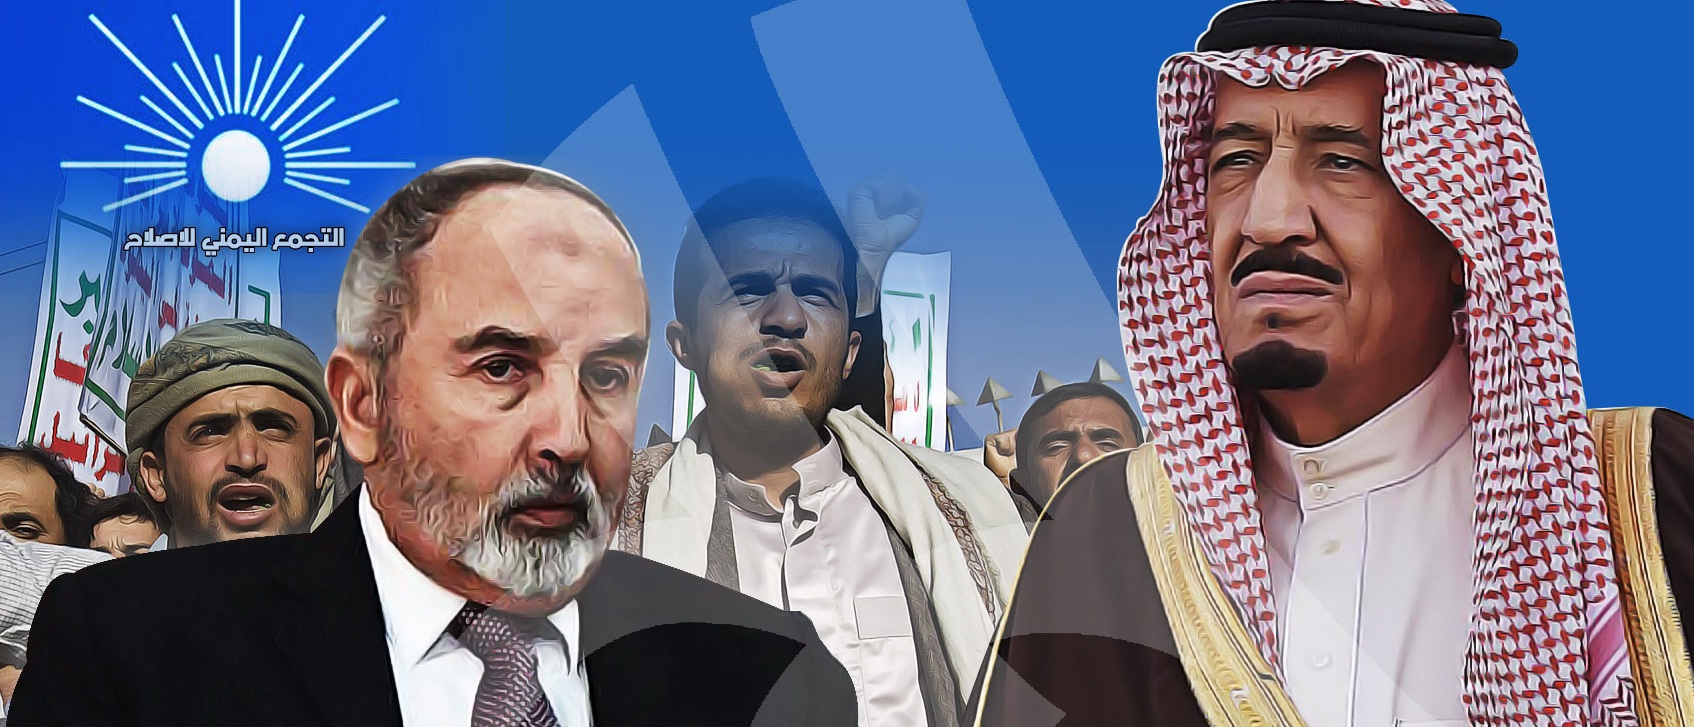 تكثيف التنسيق والاتصالات بين «إخوان اليمن» والسعودية بأوامر مباشرة من الملك سلمان